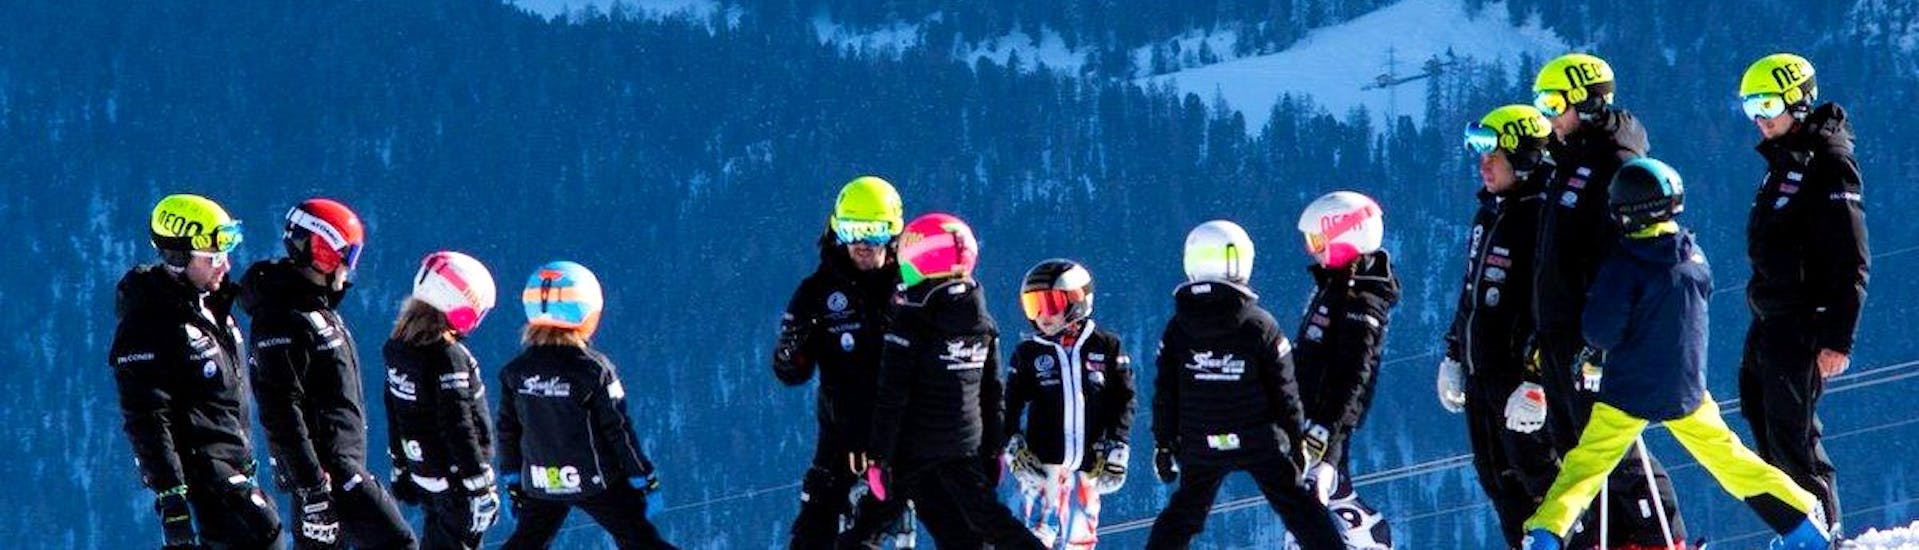 Des groupes d'enfants s'amusent sur les pistes pendant des cours particuliers de ski pour enfants avec Giorgio Rocca Academy à Crans-Montana.